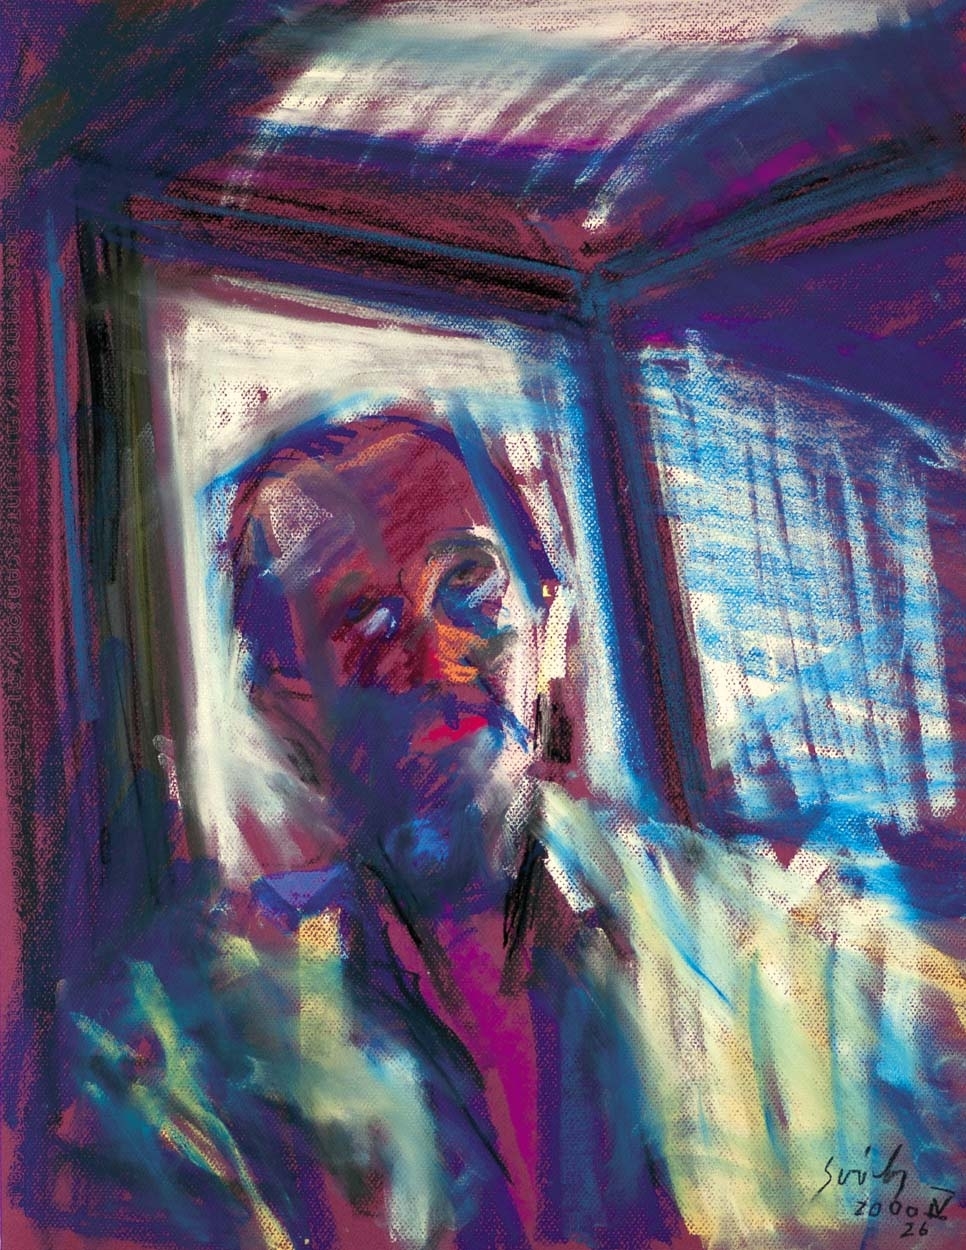 Sváby Lajos (1935-2020) Self-portrait, 2000